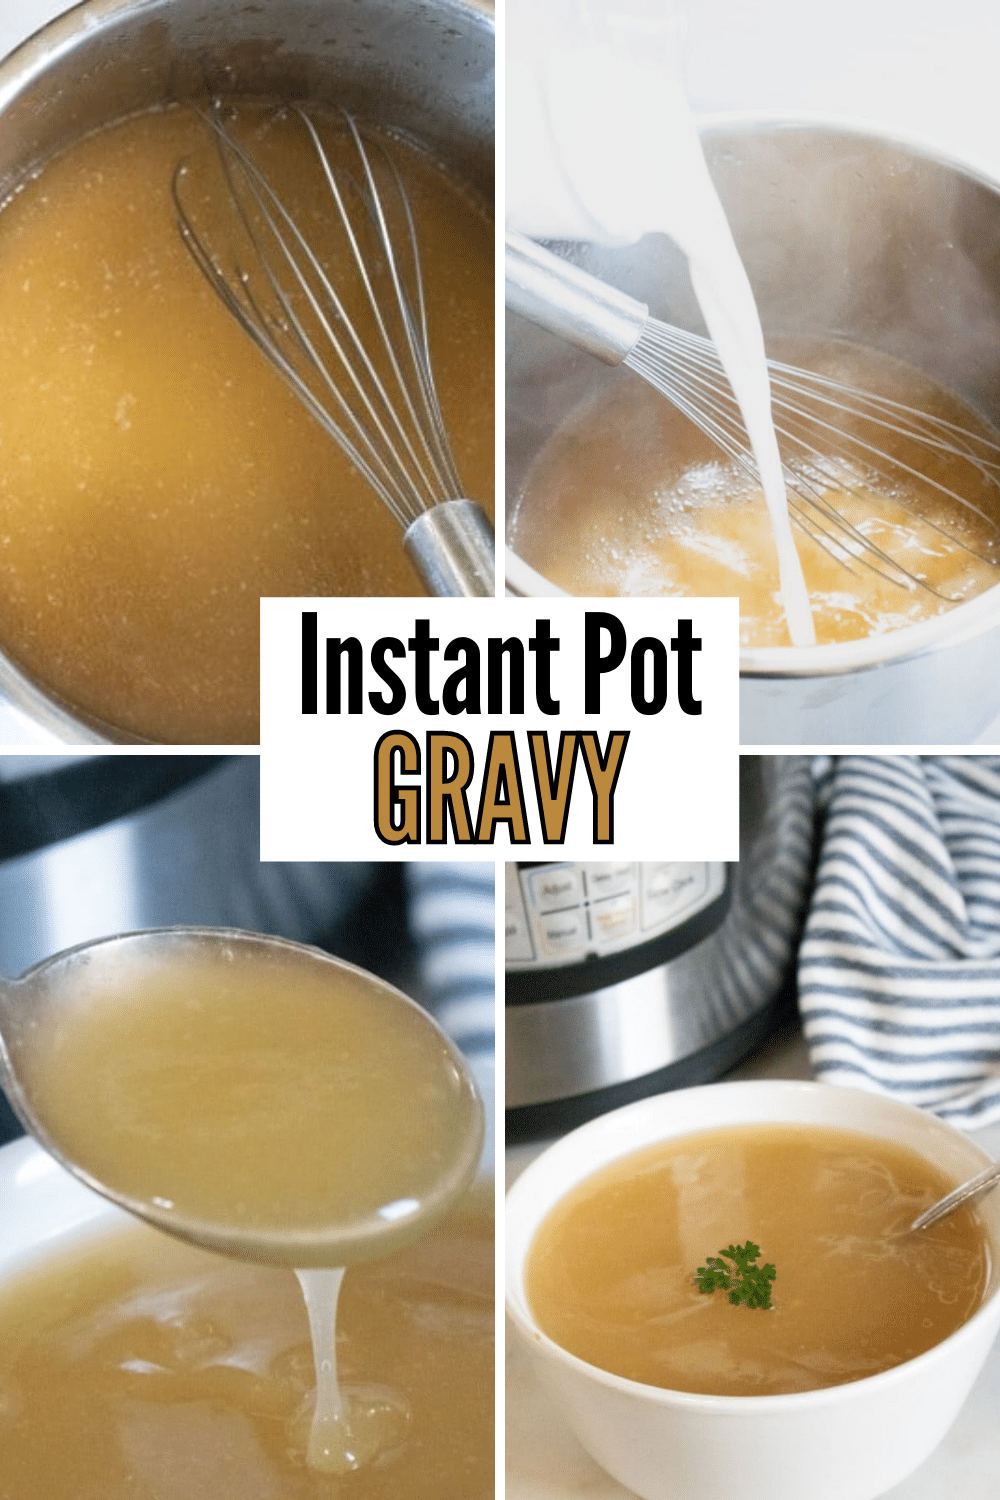 Instant pot gravy recipe.